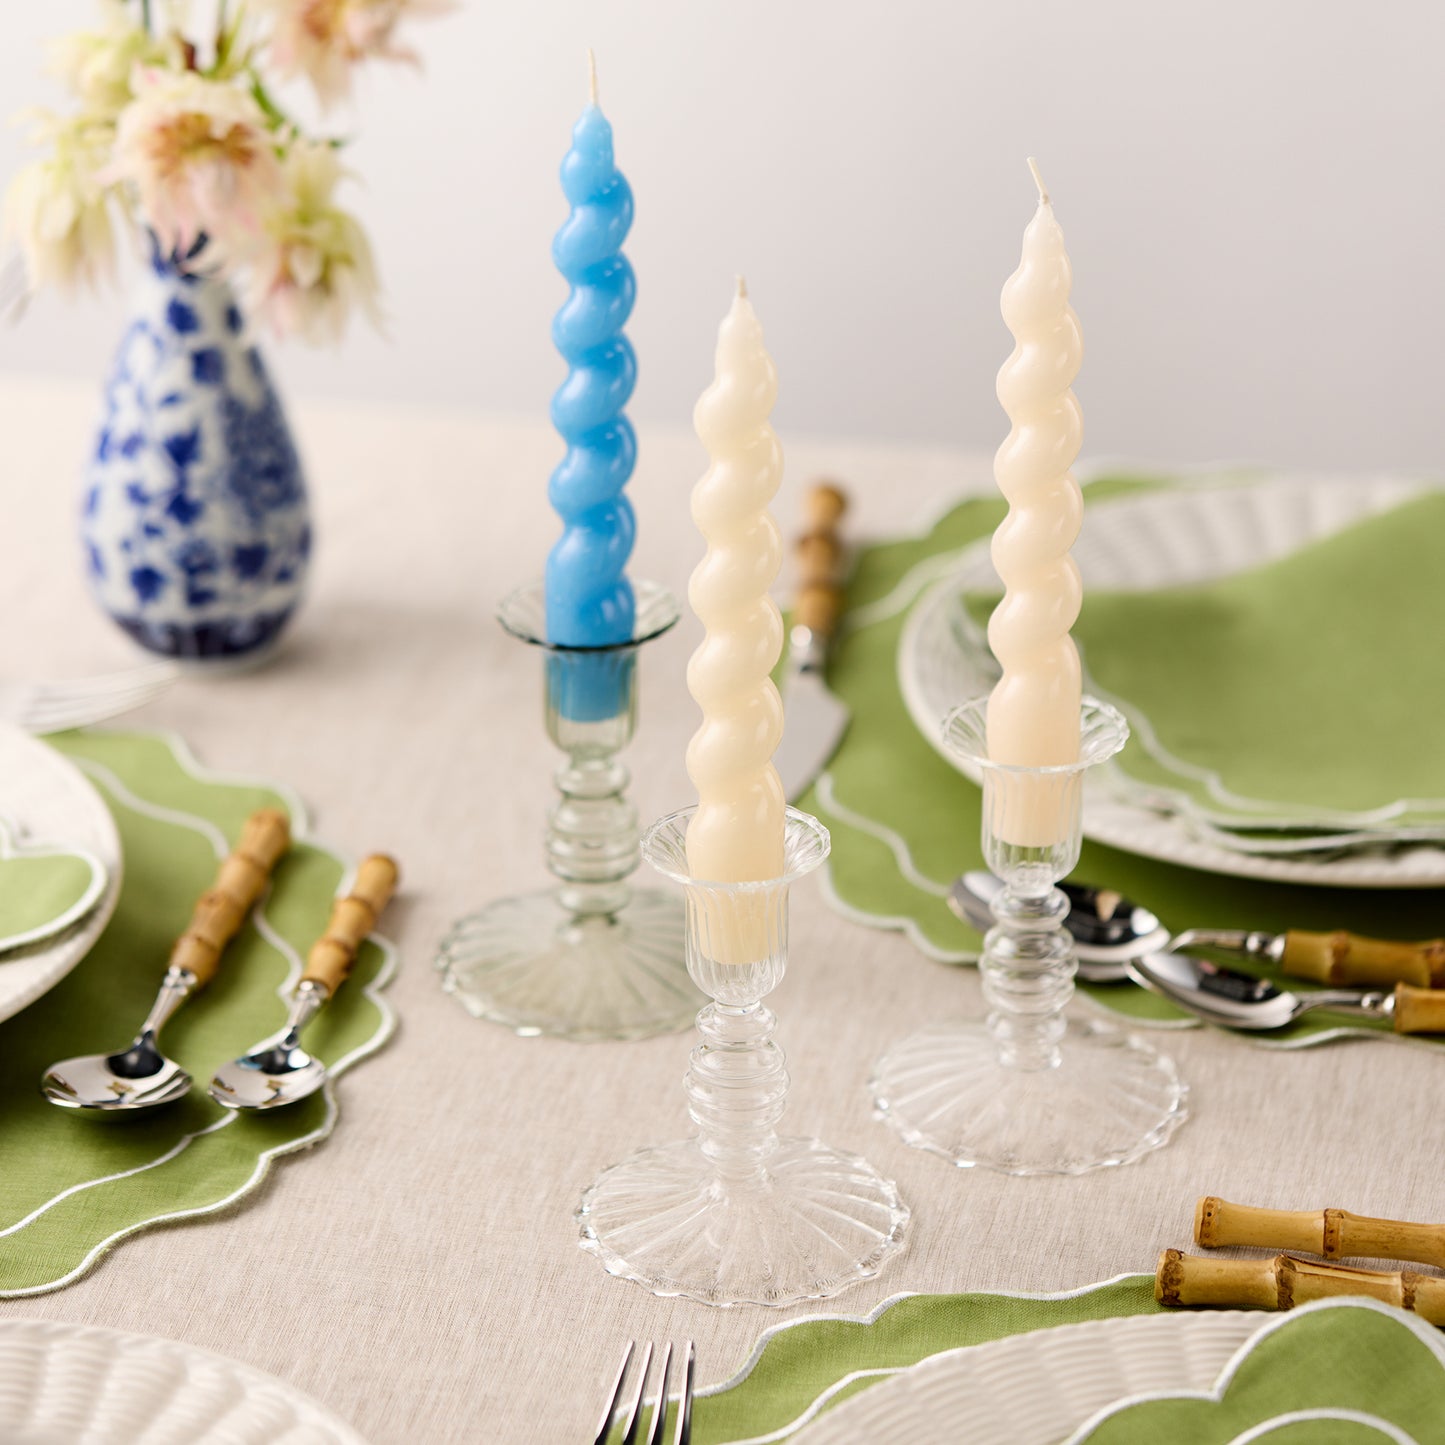 Set of 4 - Spiral Gloss Candles - Rich Cream